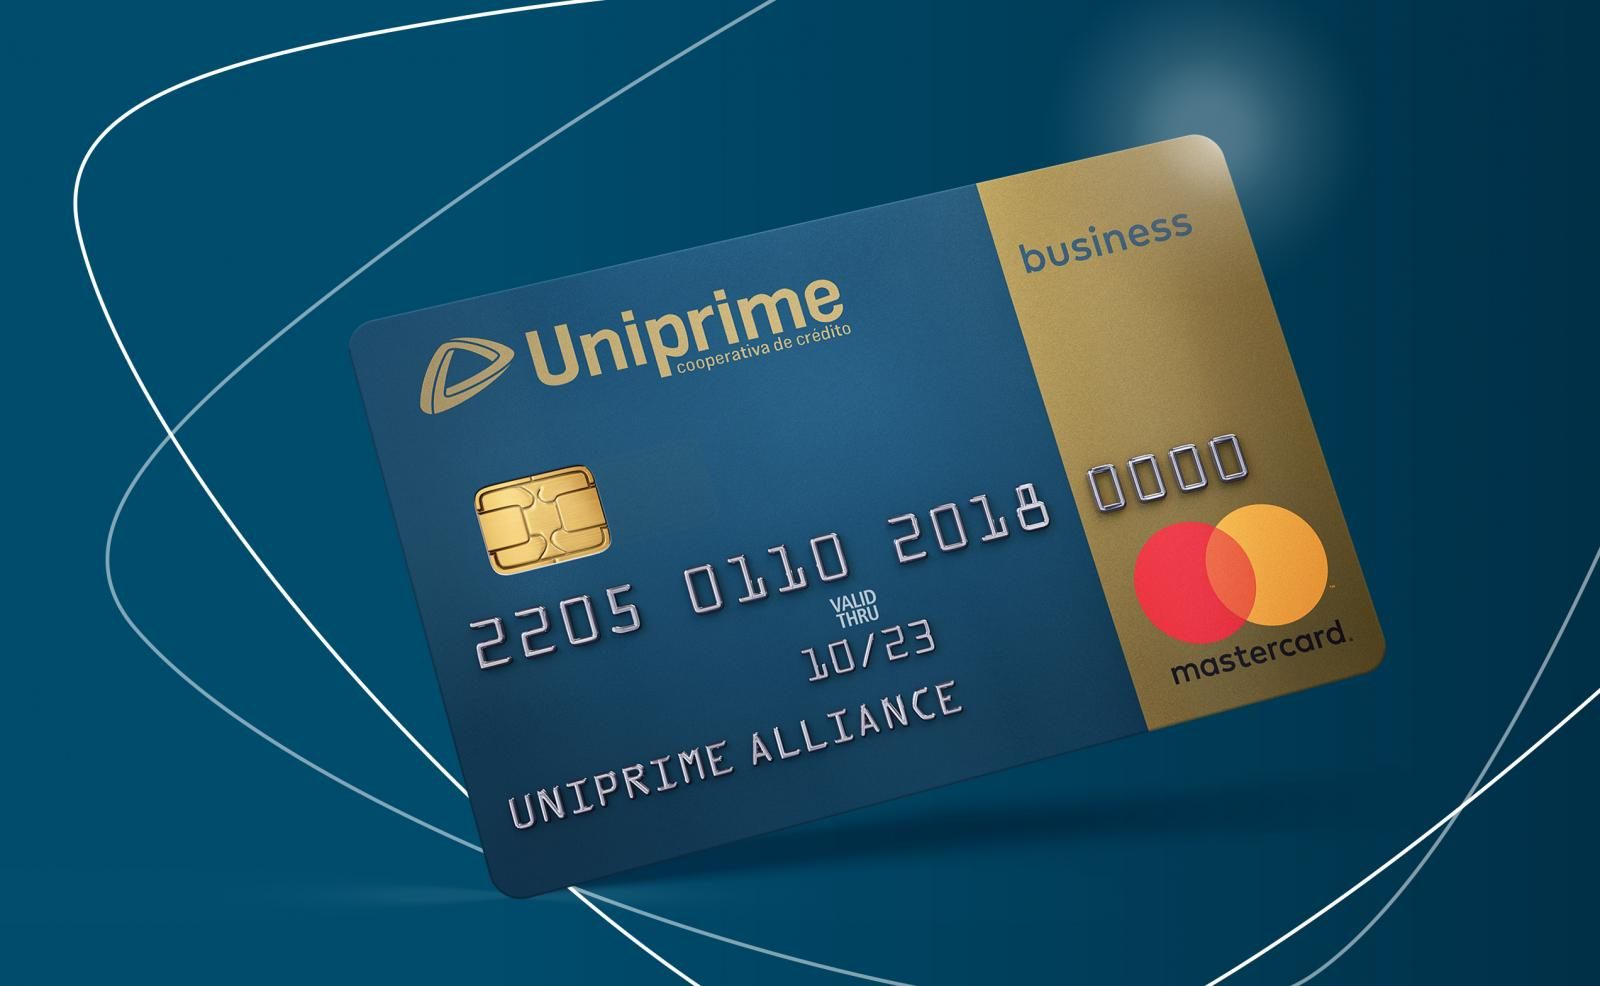 Saiba como acumular pontos com o cartão Uniprime [Mastercard Black]